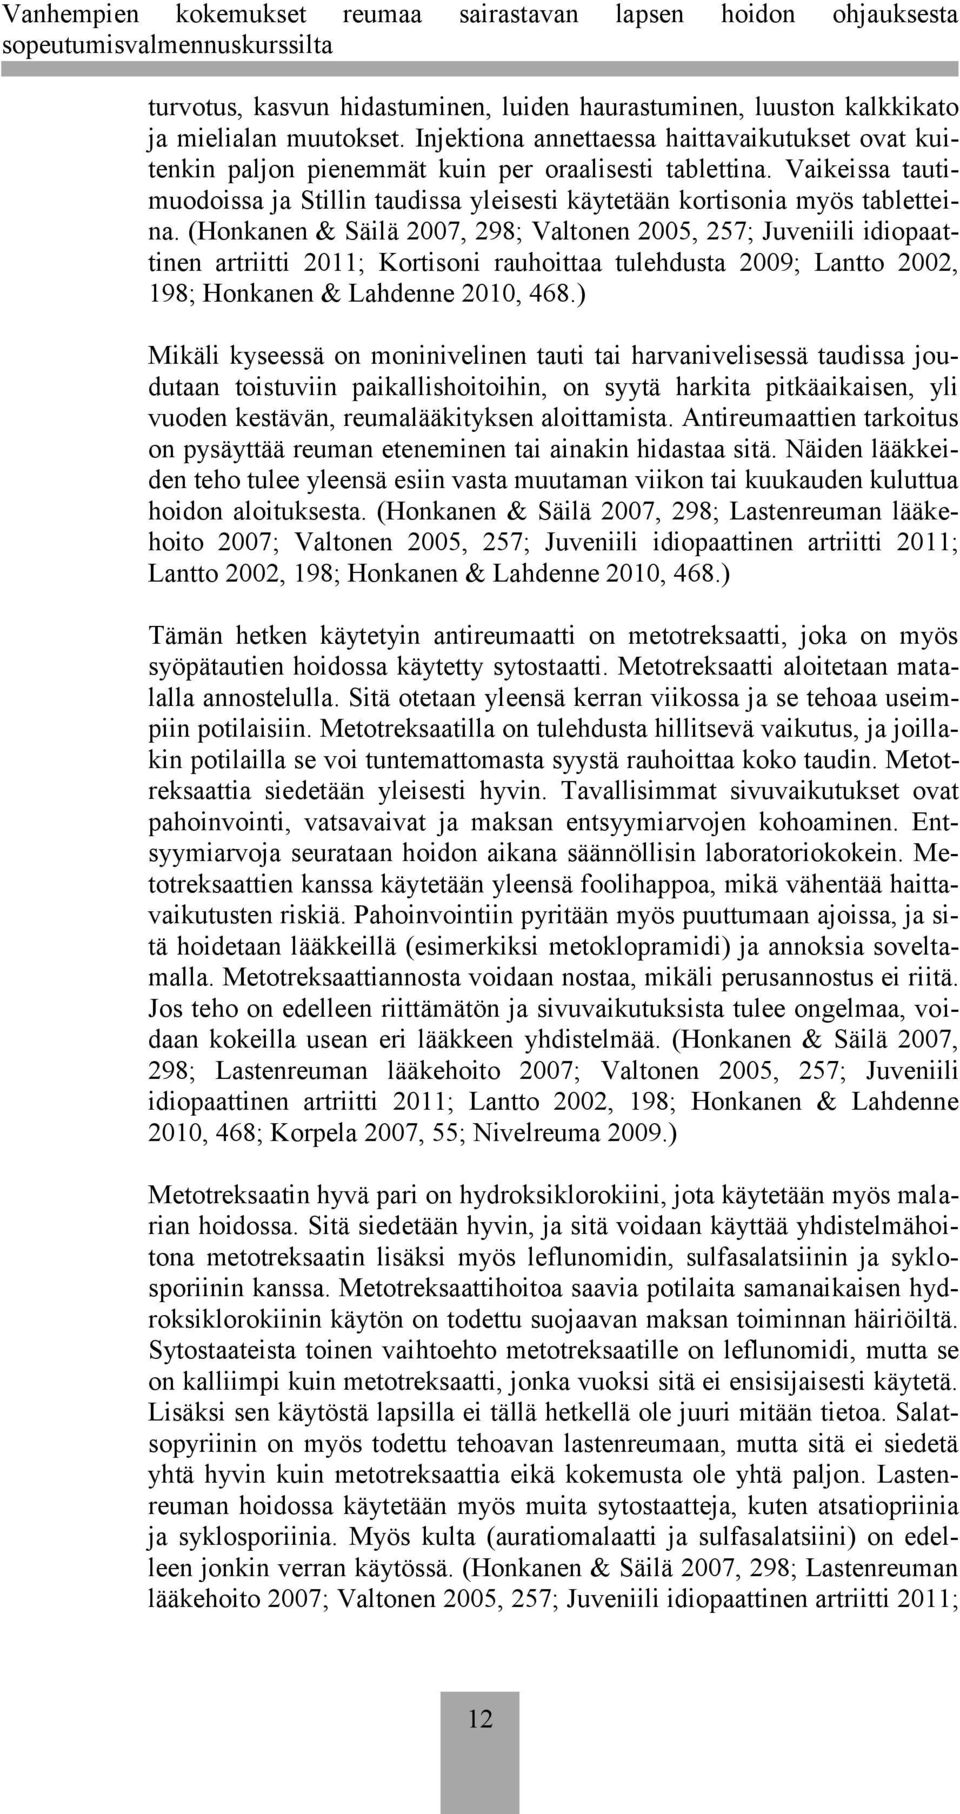 (Honkanen & Säilä 2007, 298; Valtonen 2005, 257; Juveniili idiopaattinen artriitti 2011; Kortisoni rauhoittaa tulehdusta 2009; Lantto 2002, 198; Honkanen & Lahdenne 2010, 468.